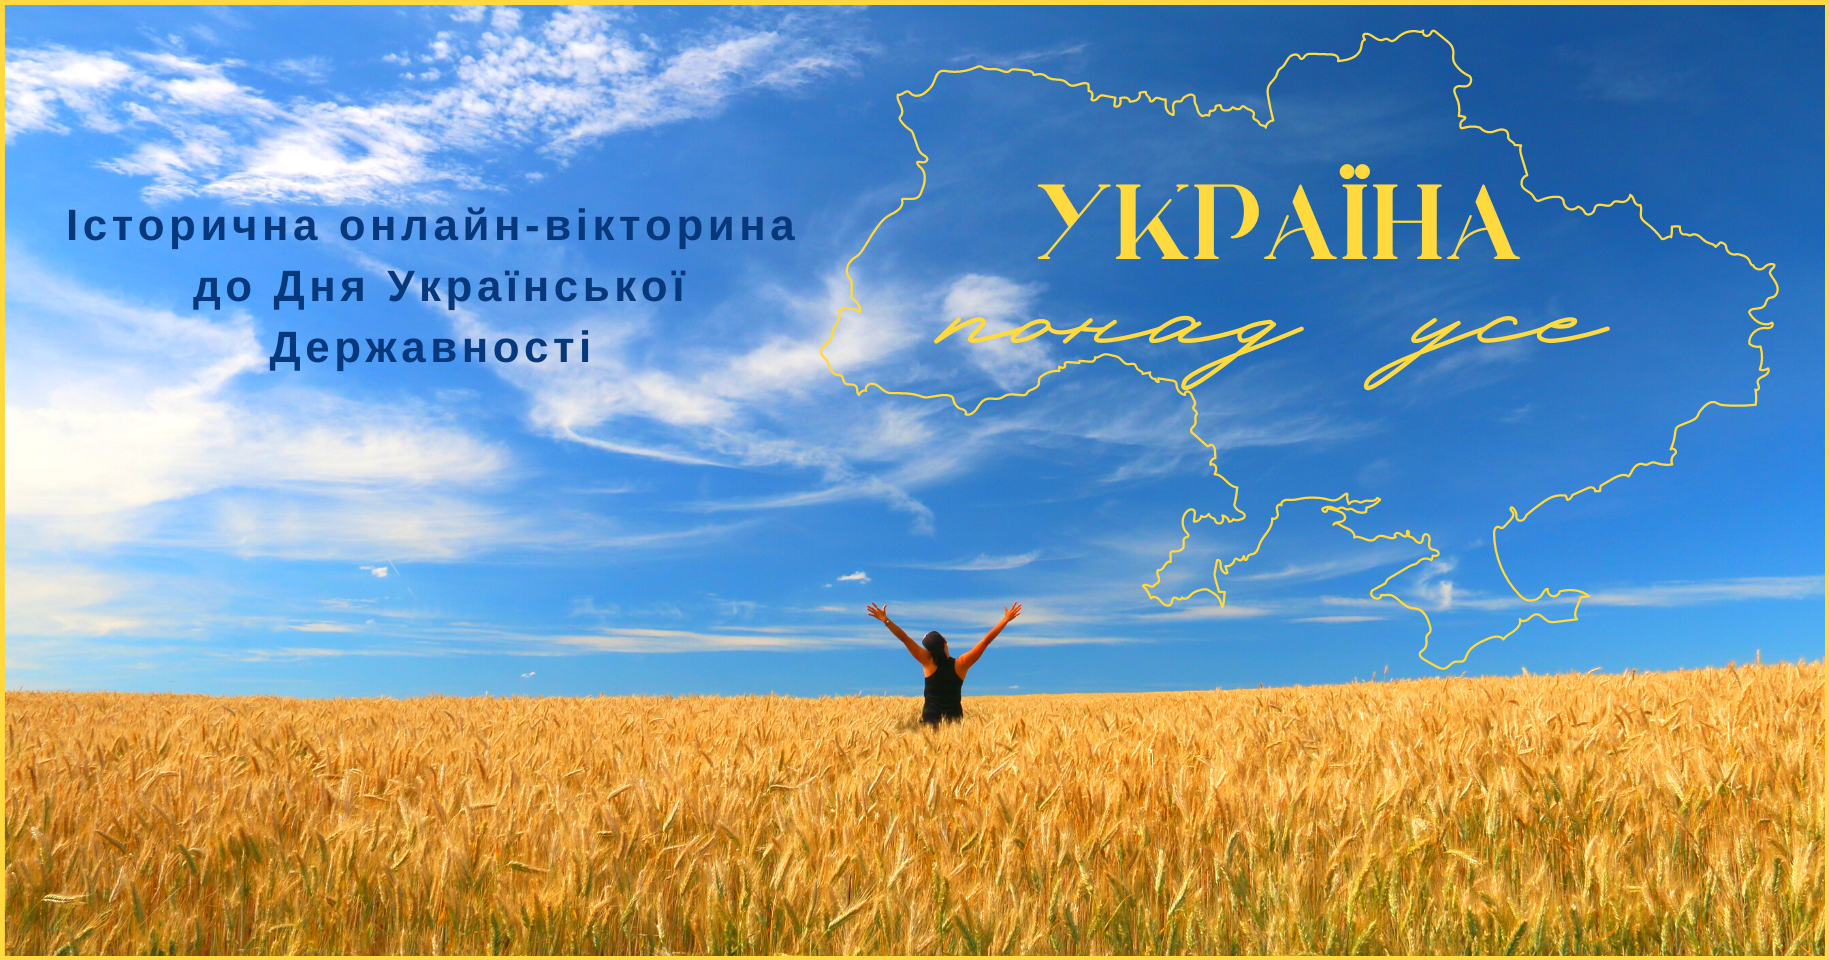 Історична онлайн-вікторина до Дня Української Державності «Україна понад усе»